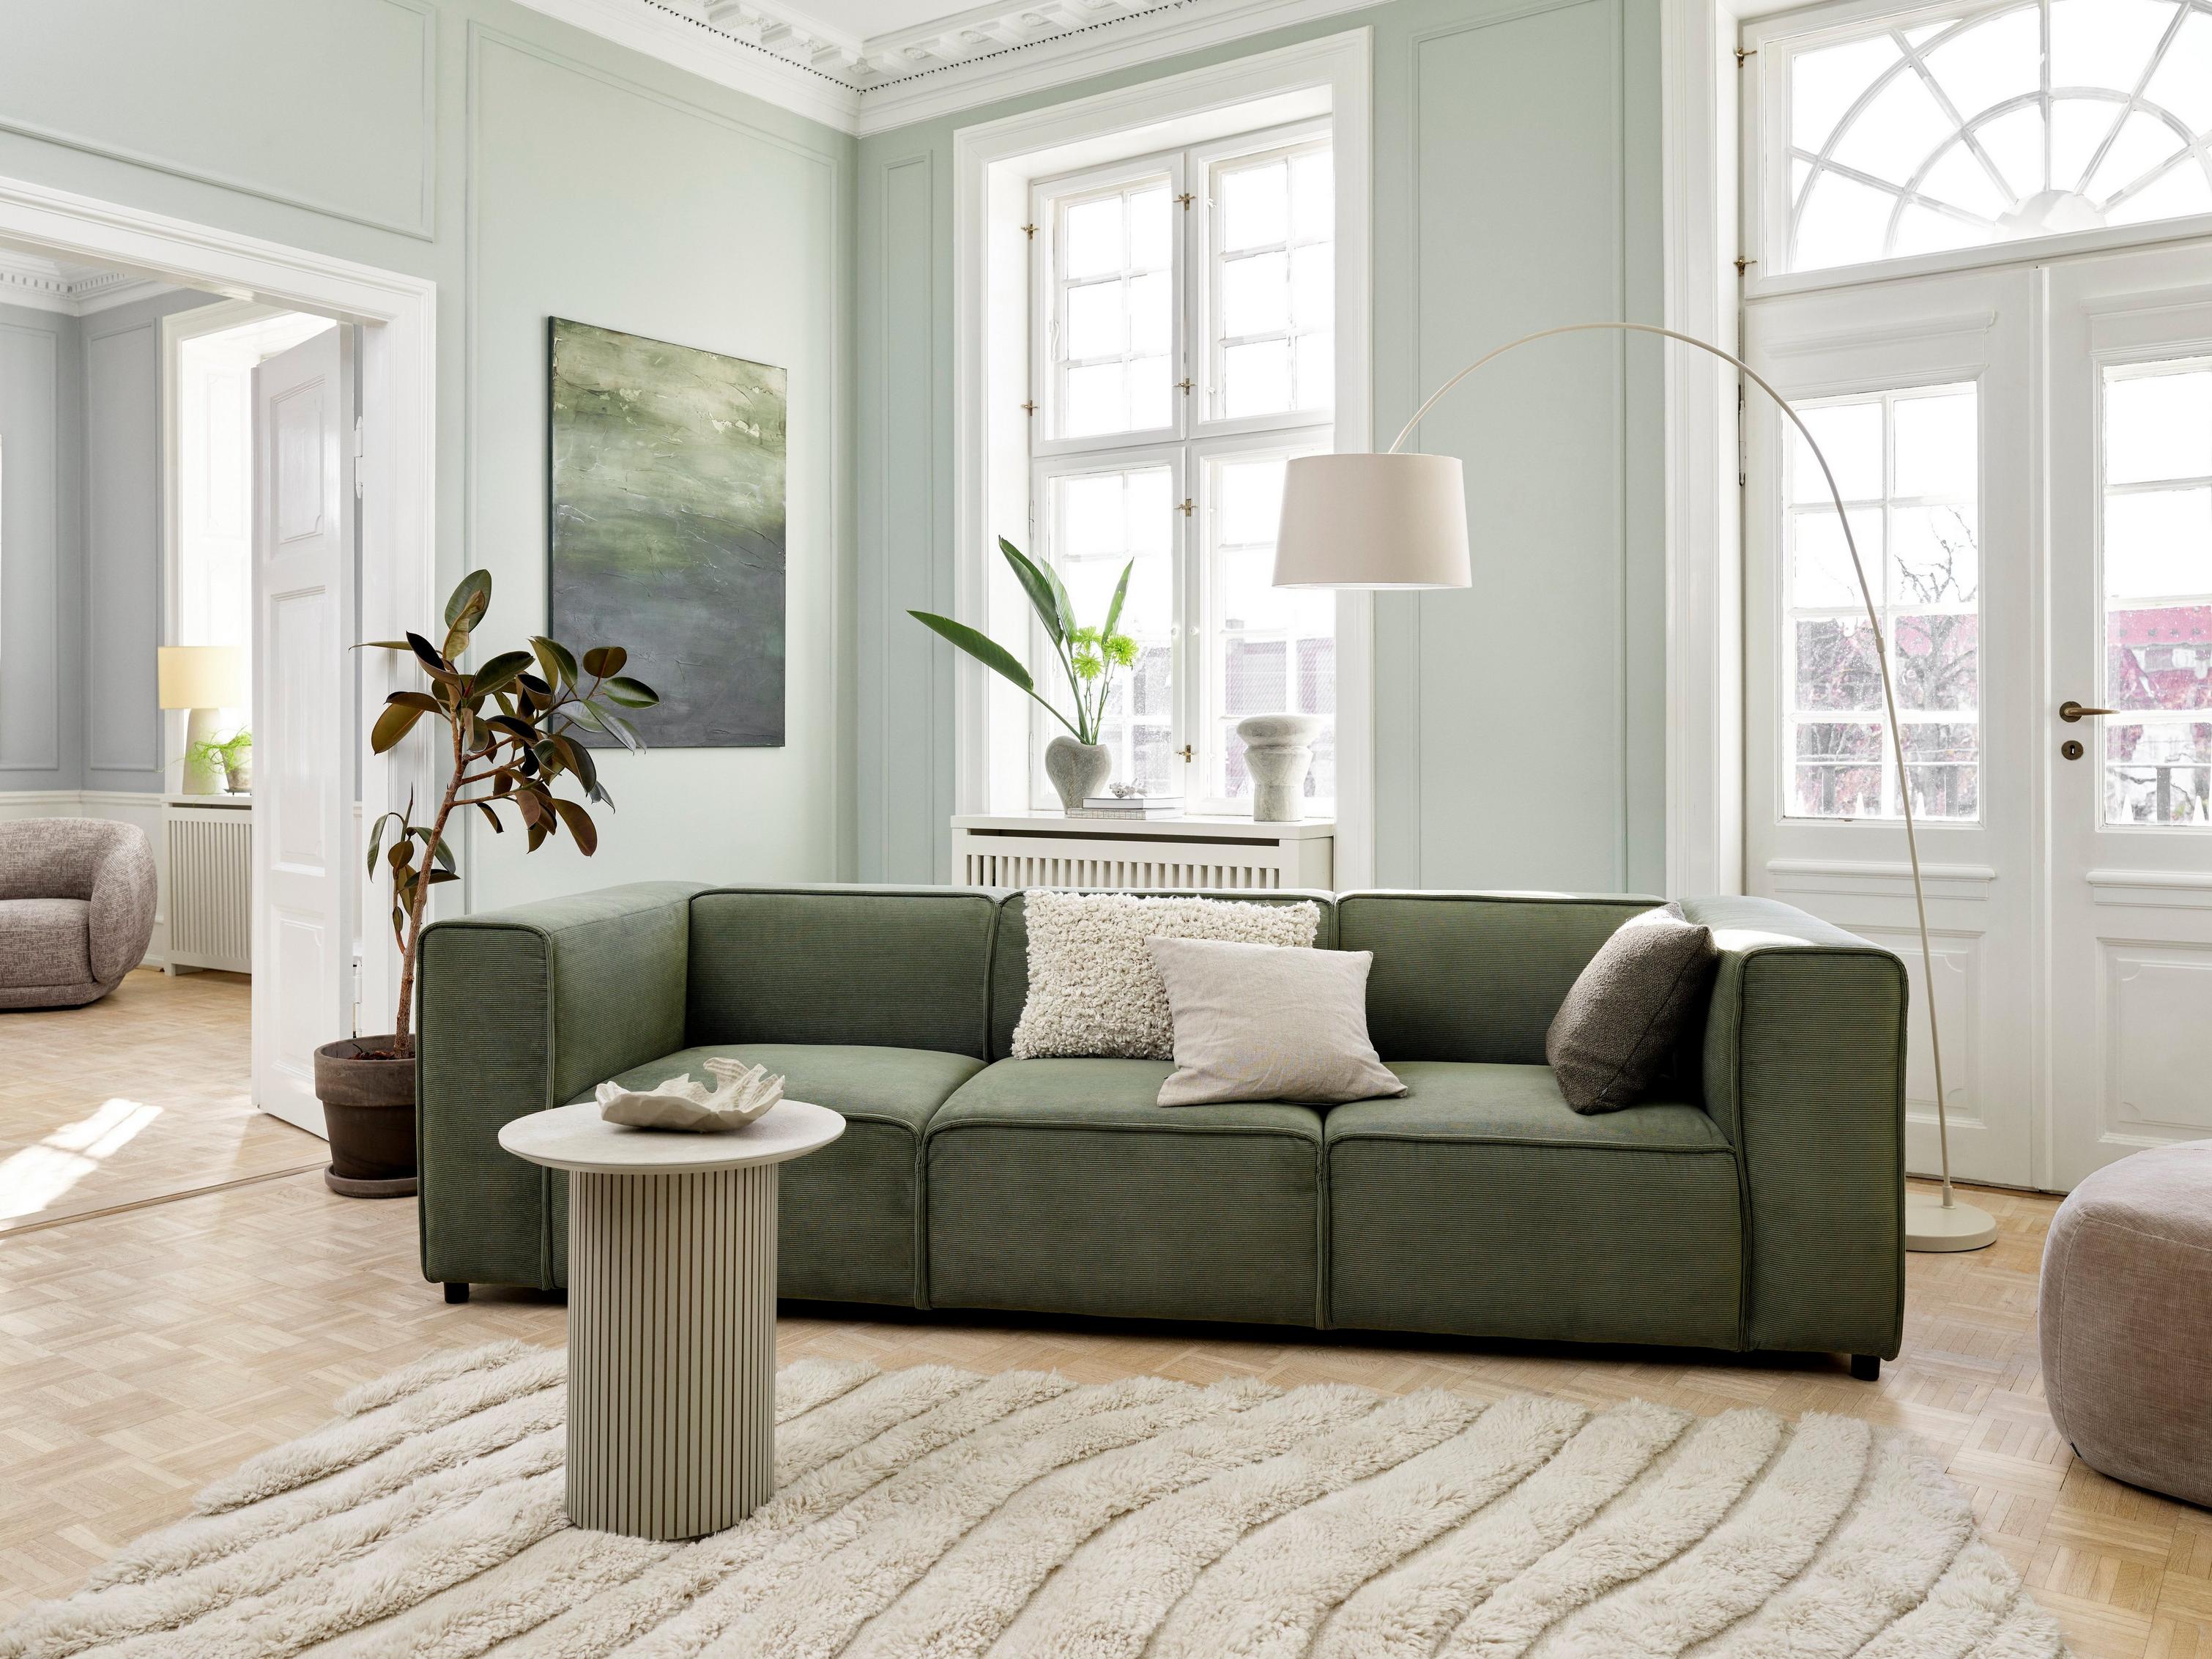 Sala inspirada en Japandi con el sofá Carmo en tela Skagen verde.